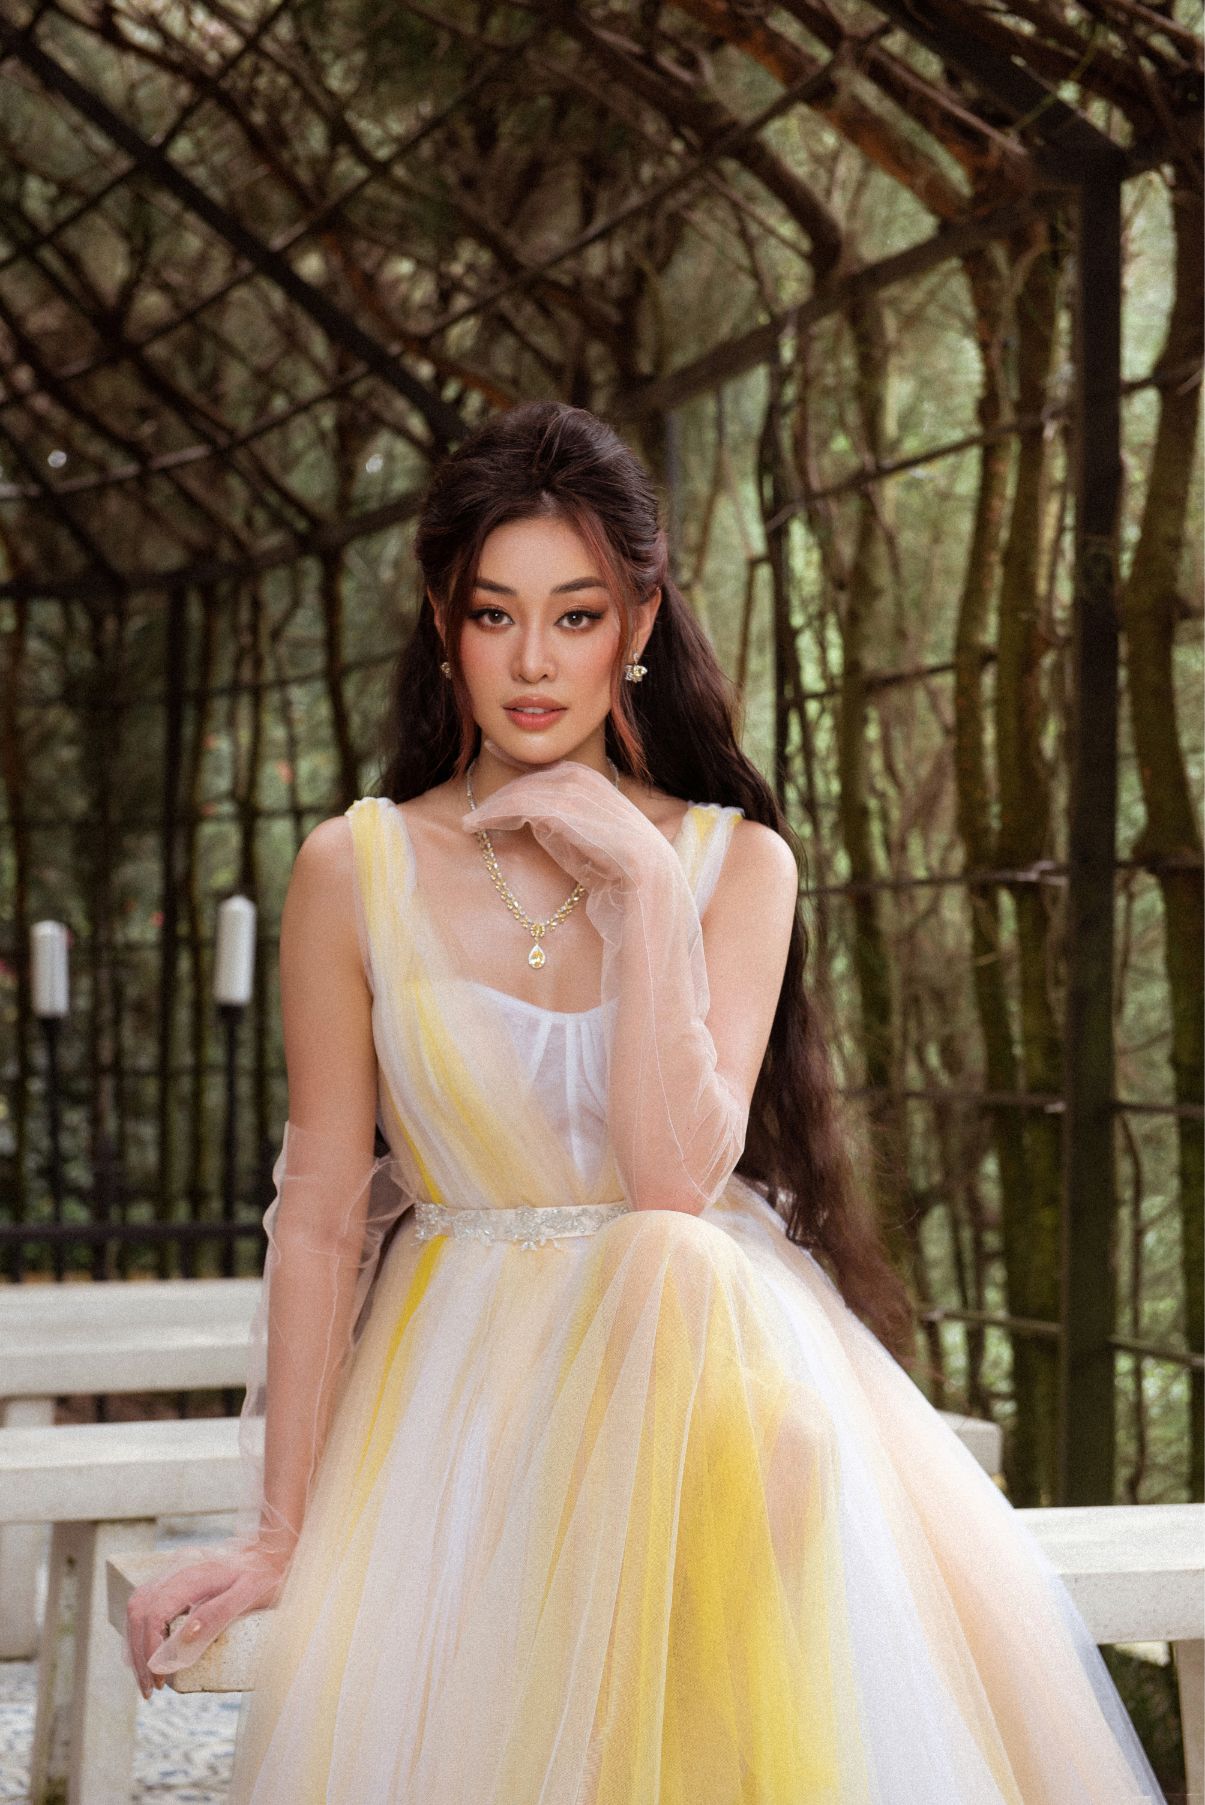 Hoa hậu Khánh Vân 3 Hoa hậu Khánh Vân ngọt ngào trong bộ ảnh mang âm hưởng cổ tích